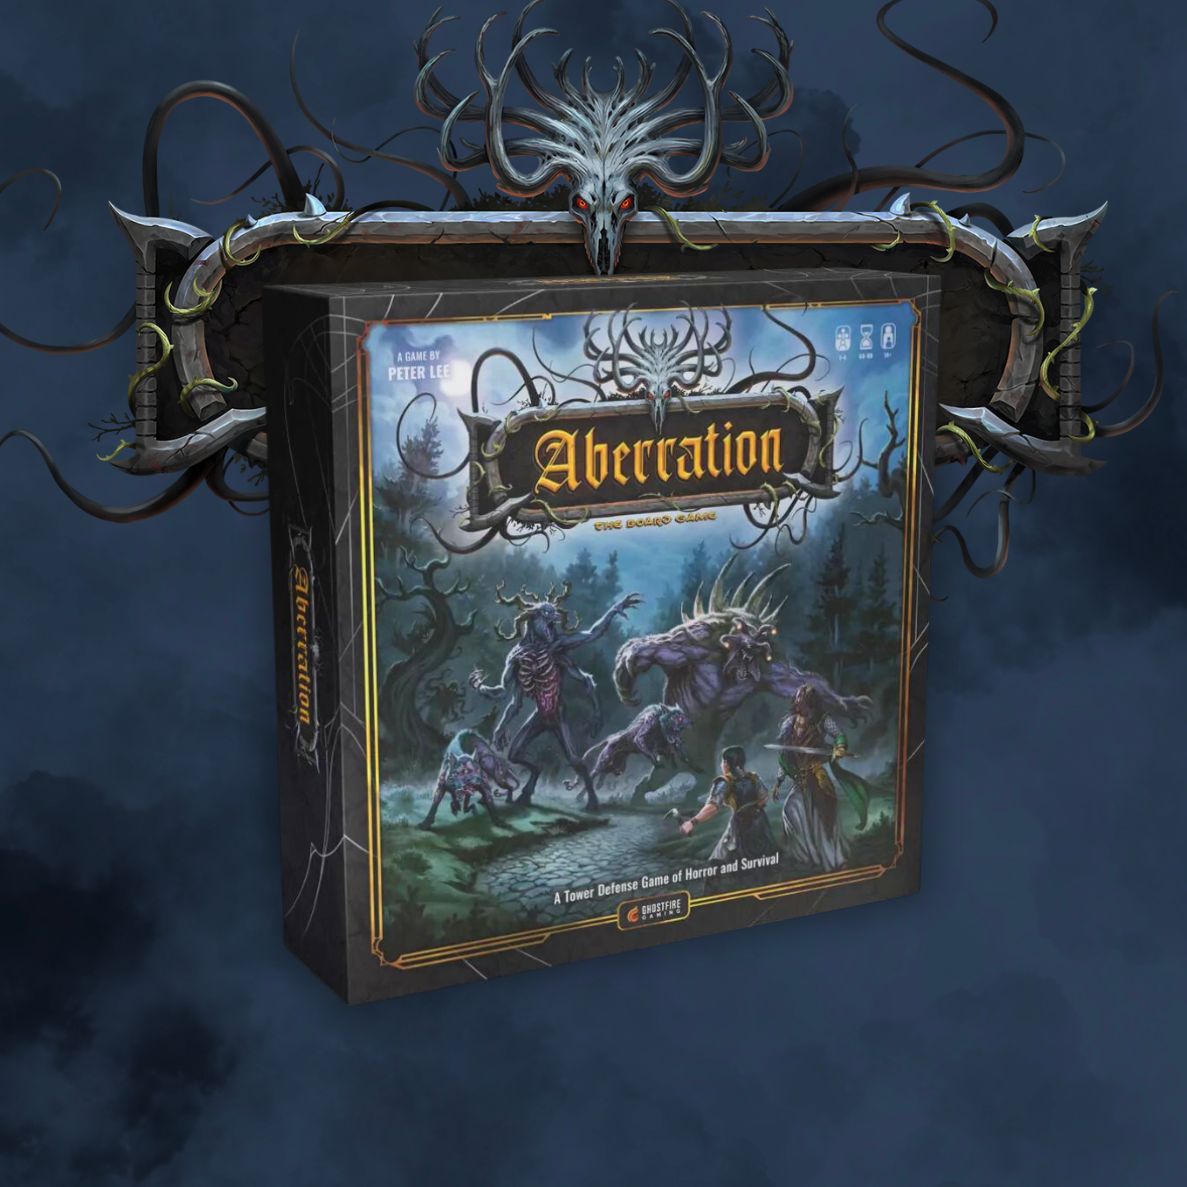 pudełko gry Aberration, której projektantem gry jest Peter Lee